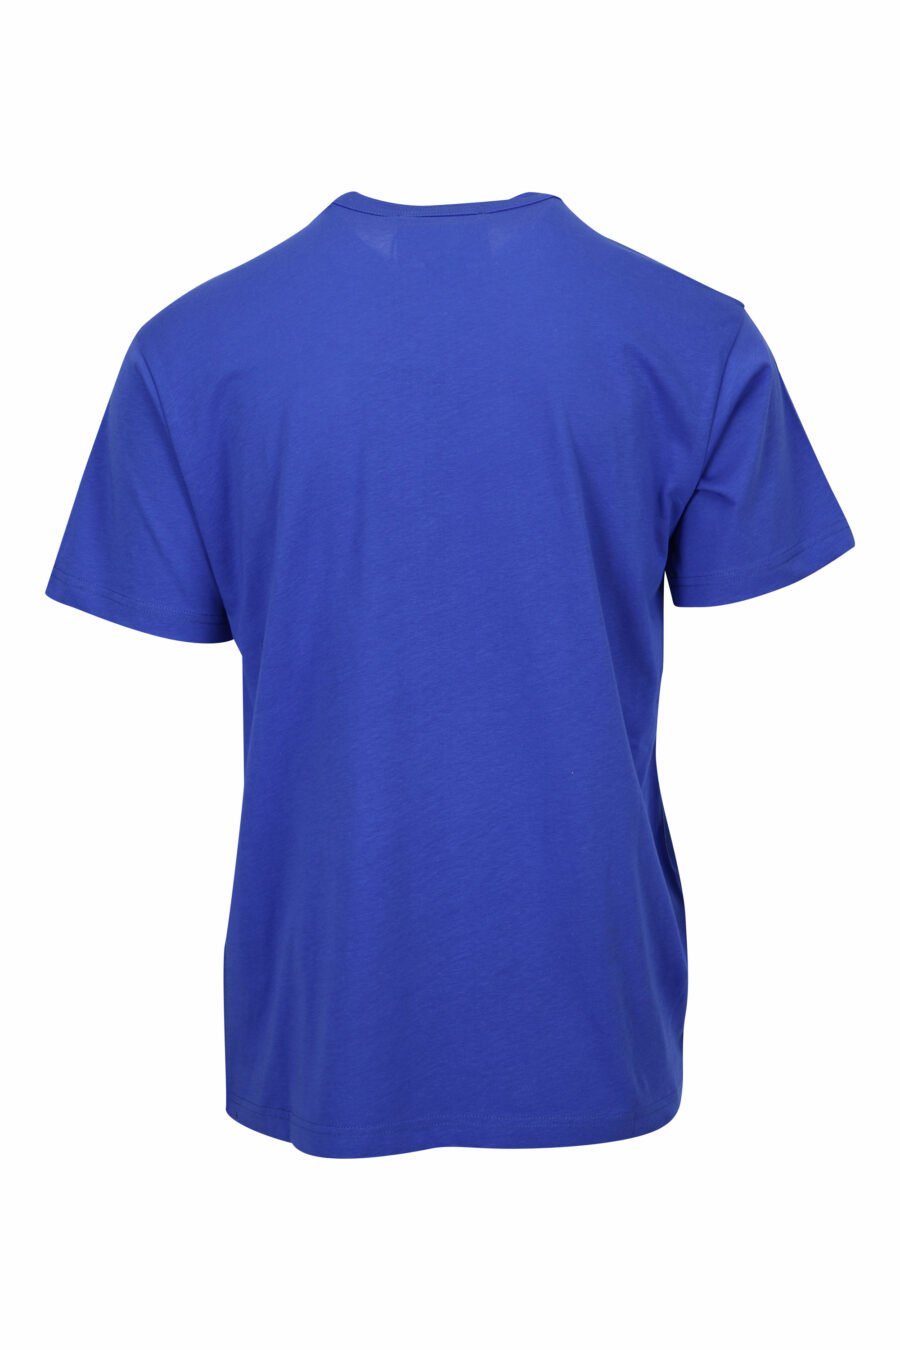 Camiseta azul klein con minilogo etiqueta - 8052019597318 1